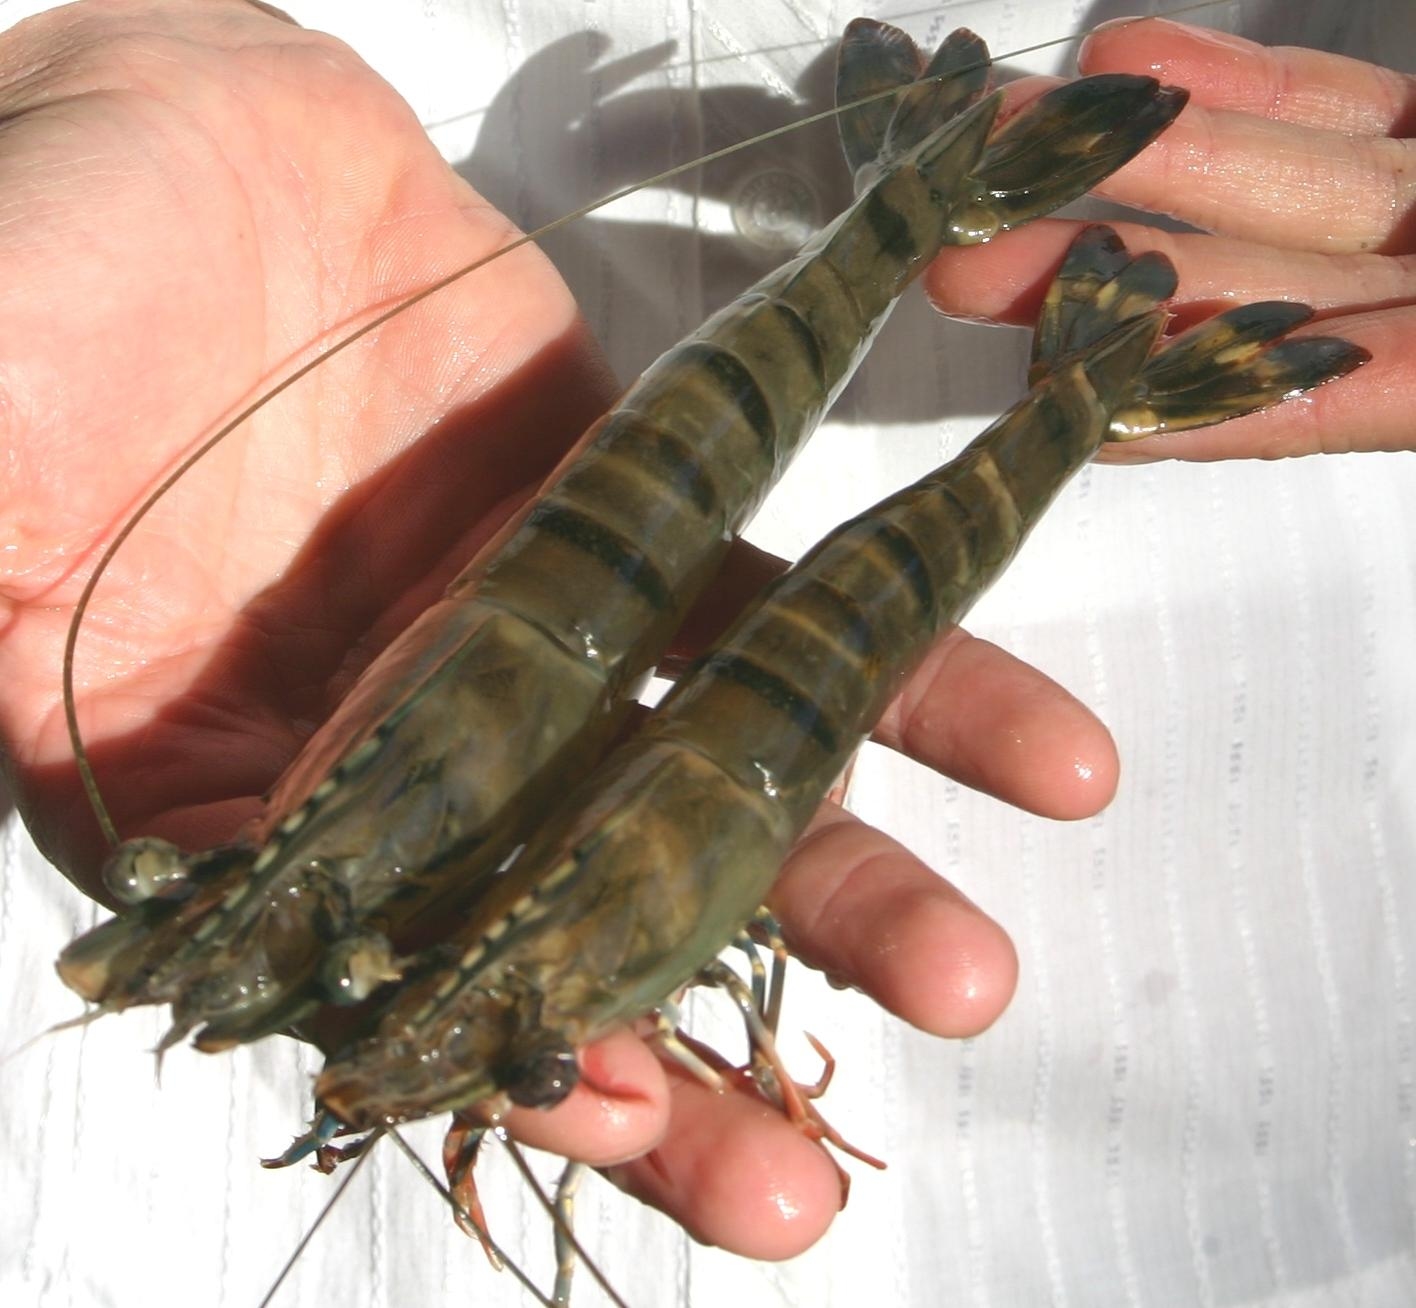 Bullish GOAL forecast has 2020 shrimp production passing 5m metric tons